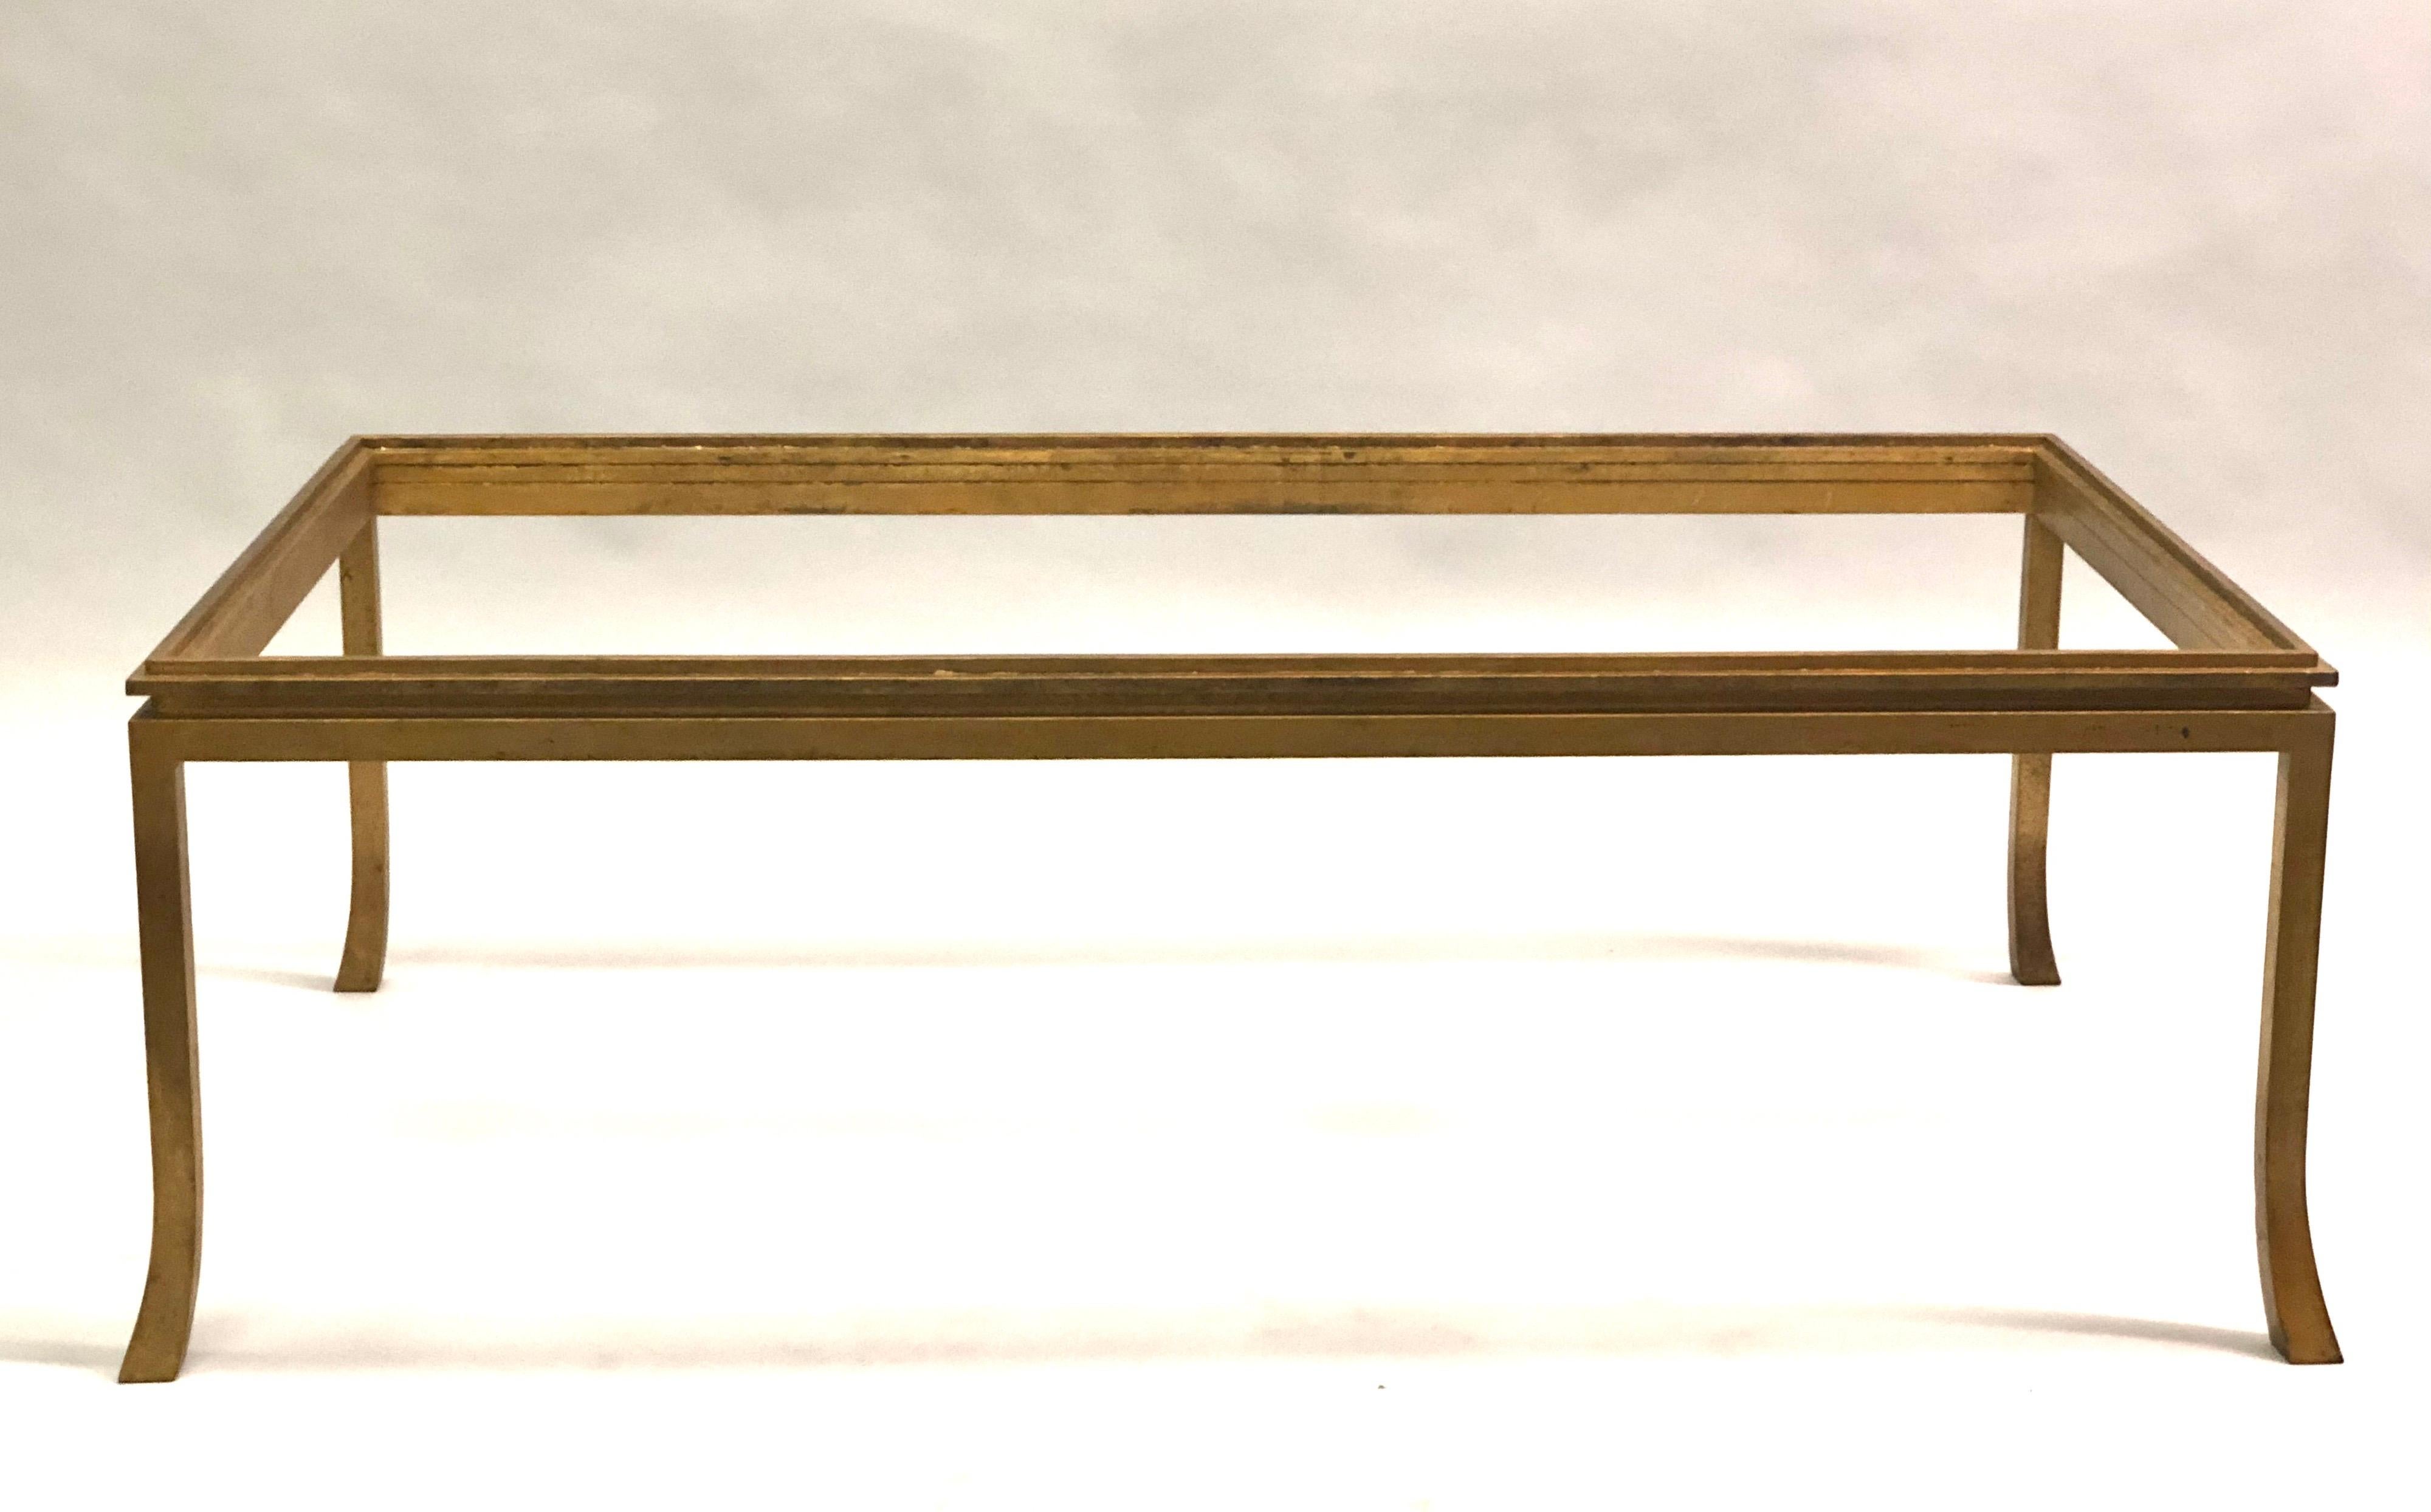 Table basse néoclassique en fer doré de la Maison Ramsay, 1970. Une table de cocktail sensuelle au style classique Ramsay avec un profil bas et des pieds évasés.

Un plateau en verre ou en pierre est disponible moyennant un coût supplémentaire. Les